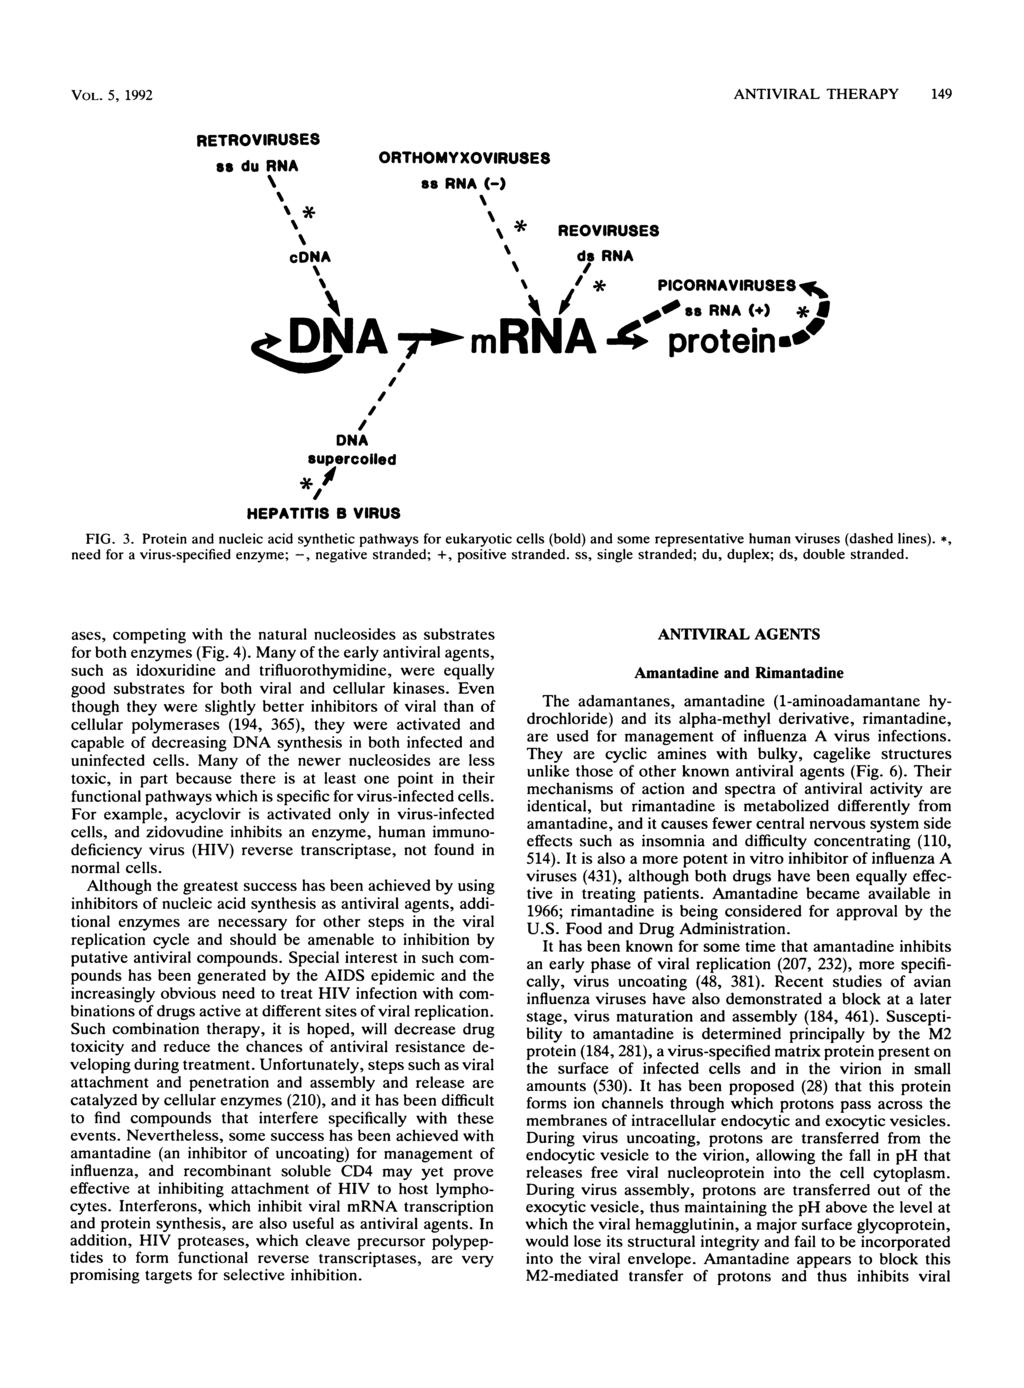 VOL. 5, 1992 ANTIVIRAL THERAPY 149 RETROVIRUSES as du RNA ORTHOMYXOVIRUSES as RNA (-) cdna * REOVIRUSES ds RNA ; % // * PICORNAVIRUSES a / t ss RNA(+) *J crdsia mrna 4 proteins" DNA supercolled